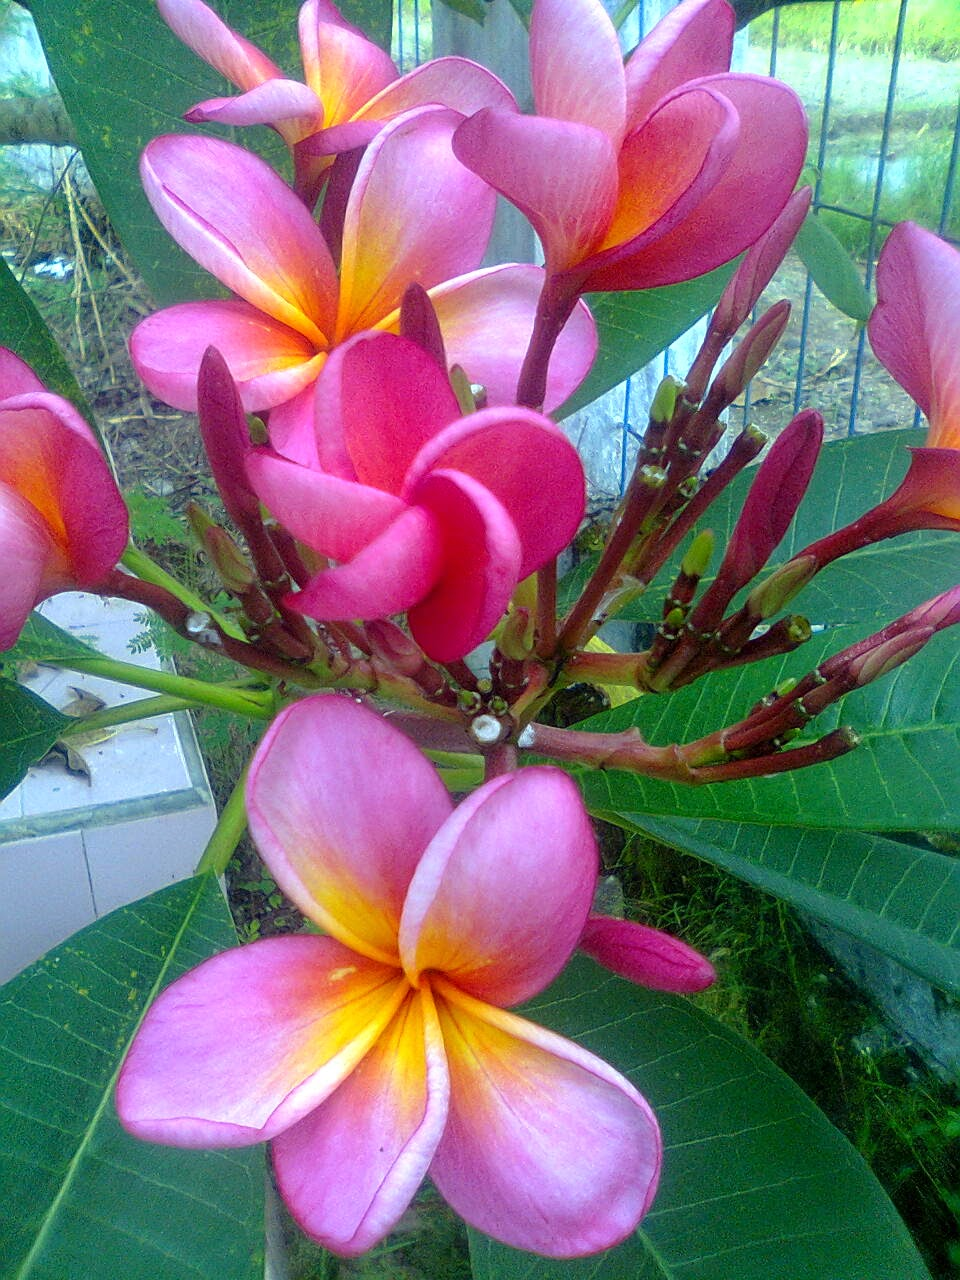  Aneka Gambar Cantik Bunga Kamboja Yang Menakjubkan dan 